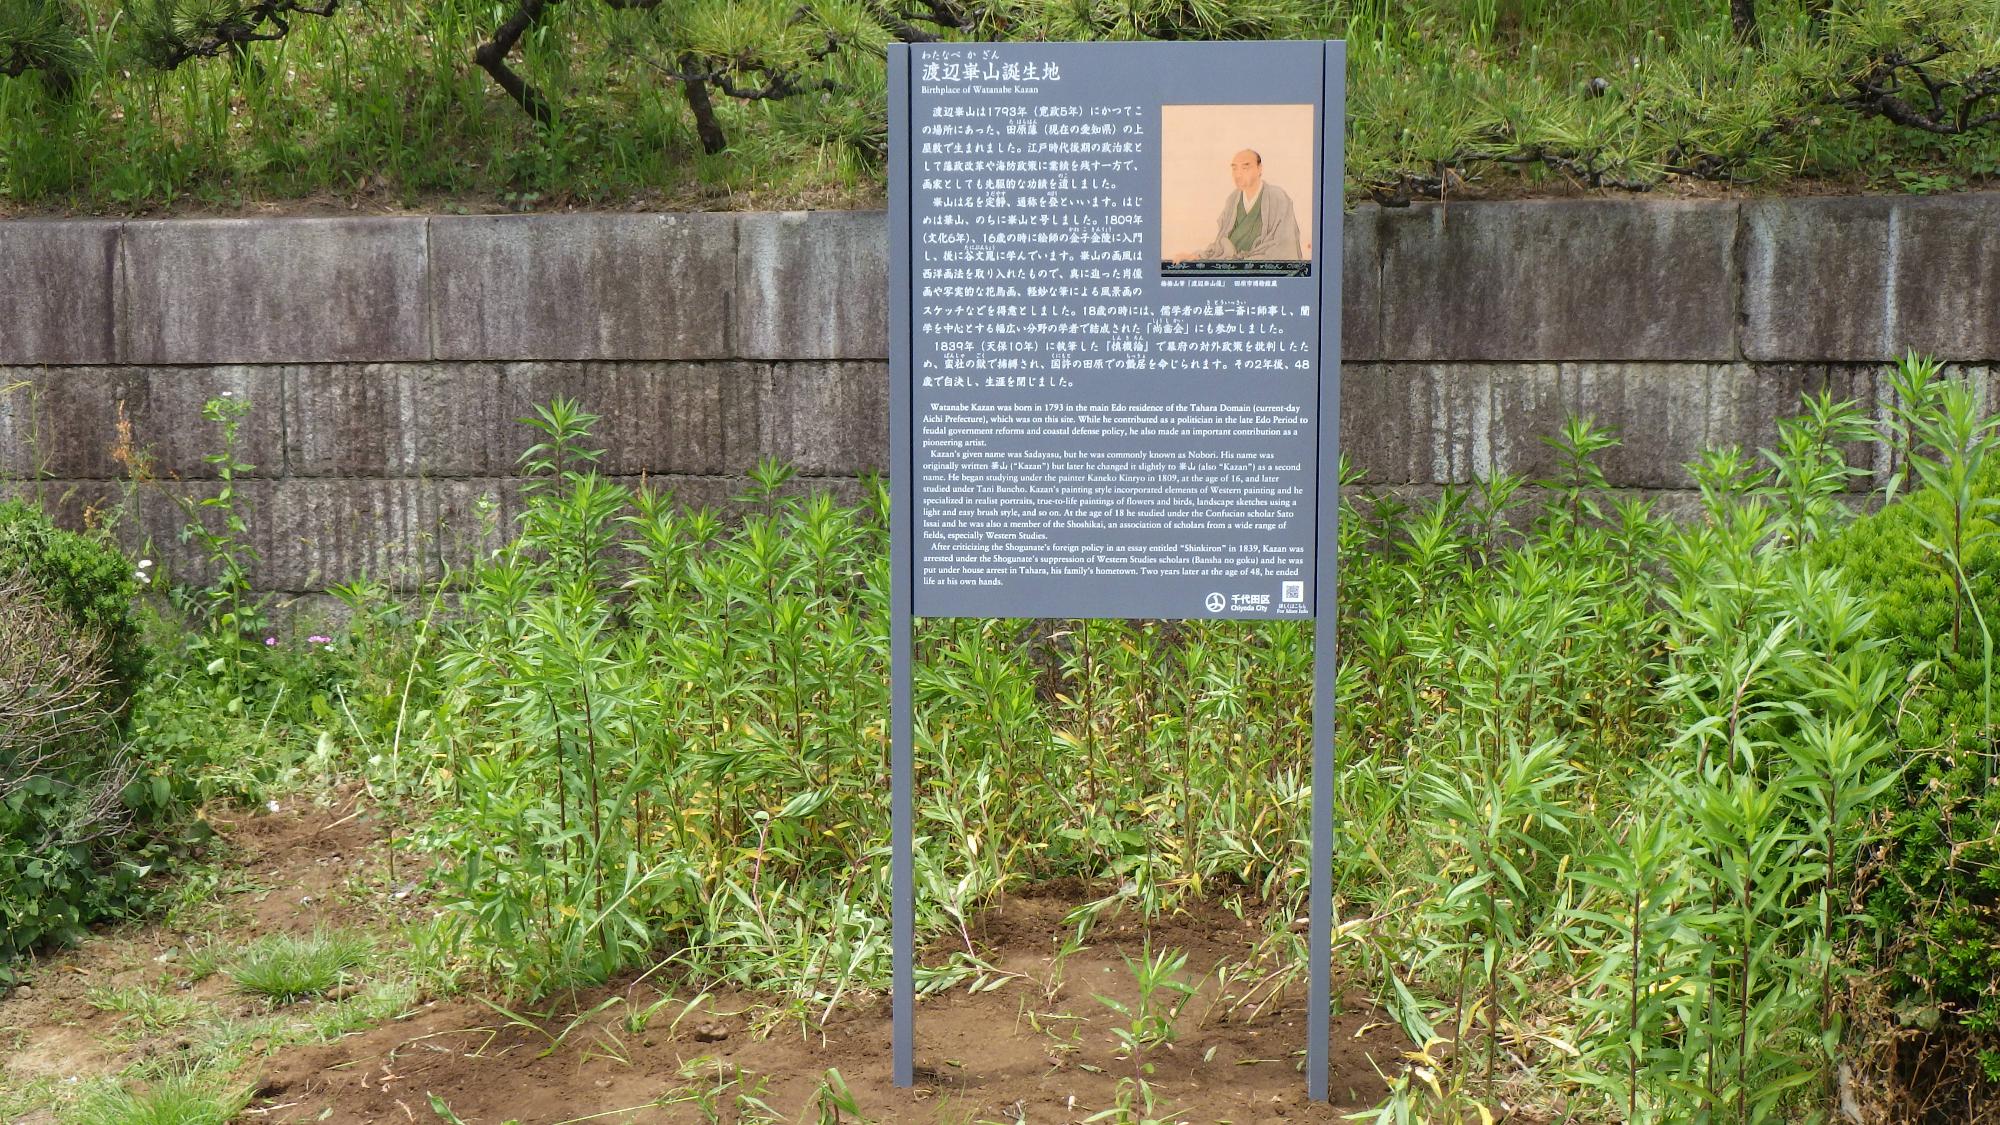 公園内の草むらに設置された渡辺崋山誕生地の説明板の写真